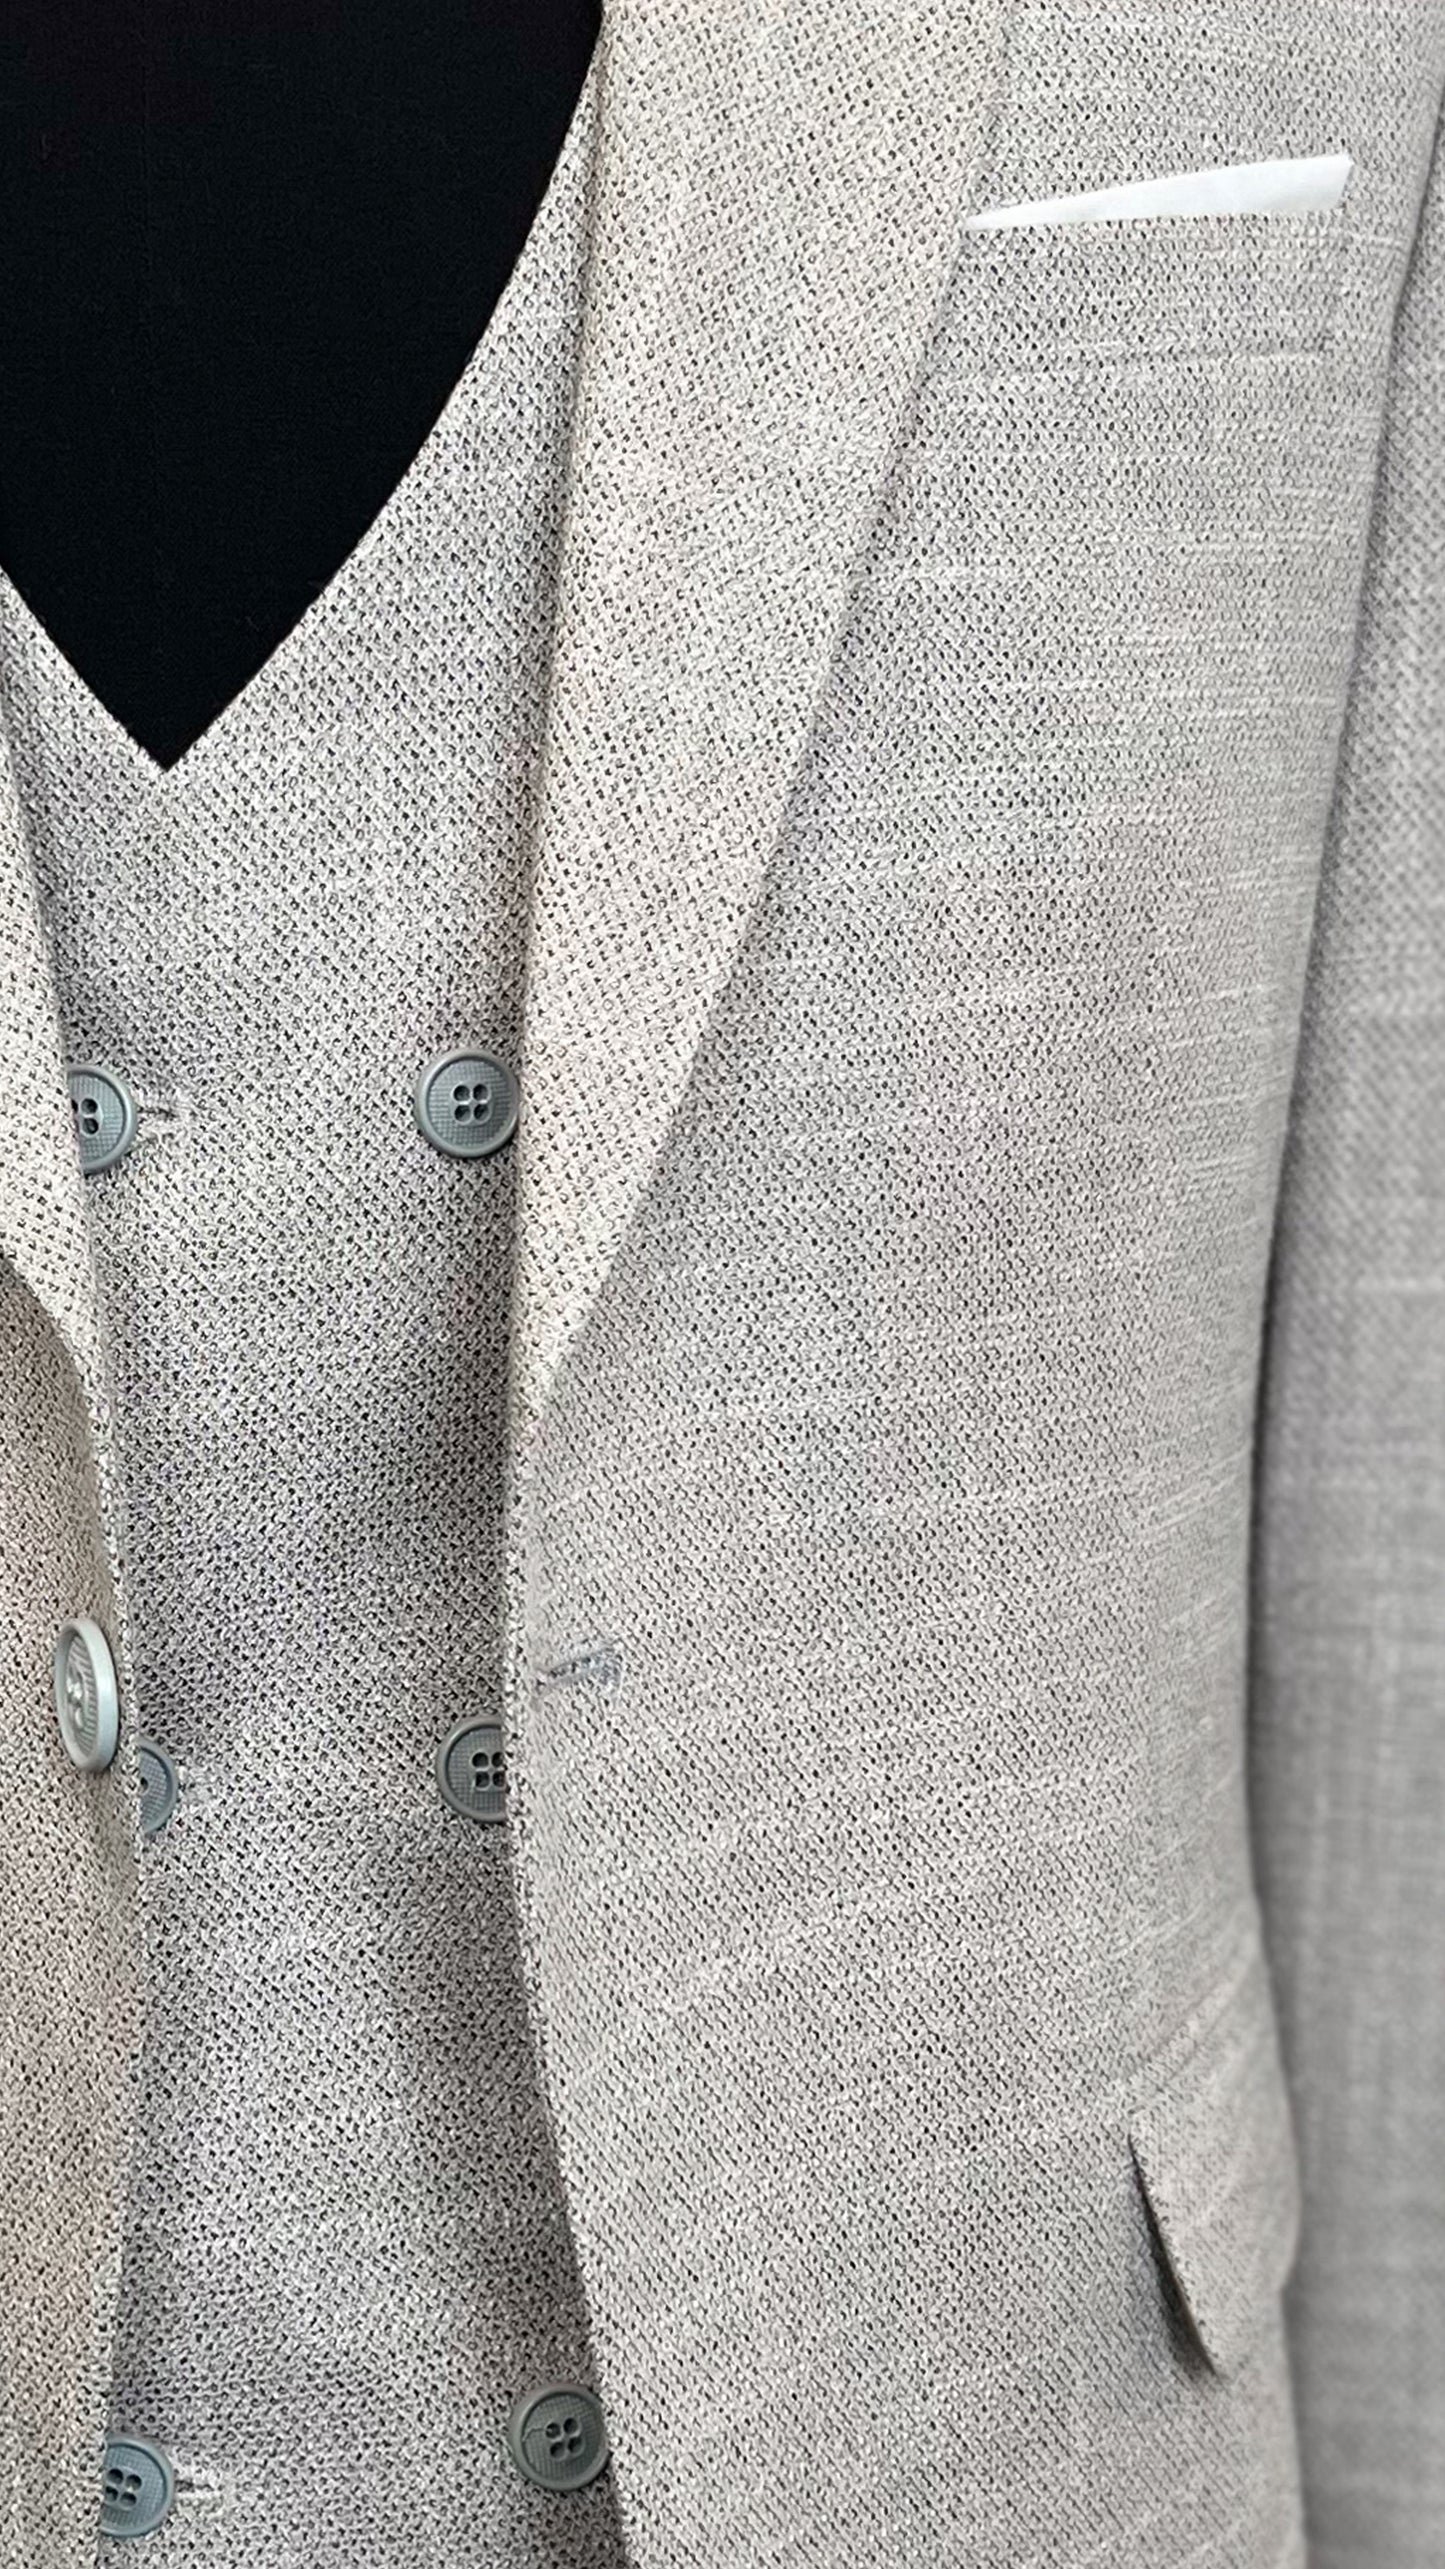 Men's Contemporary Linen-Blend Suit by Vercini